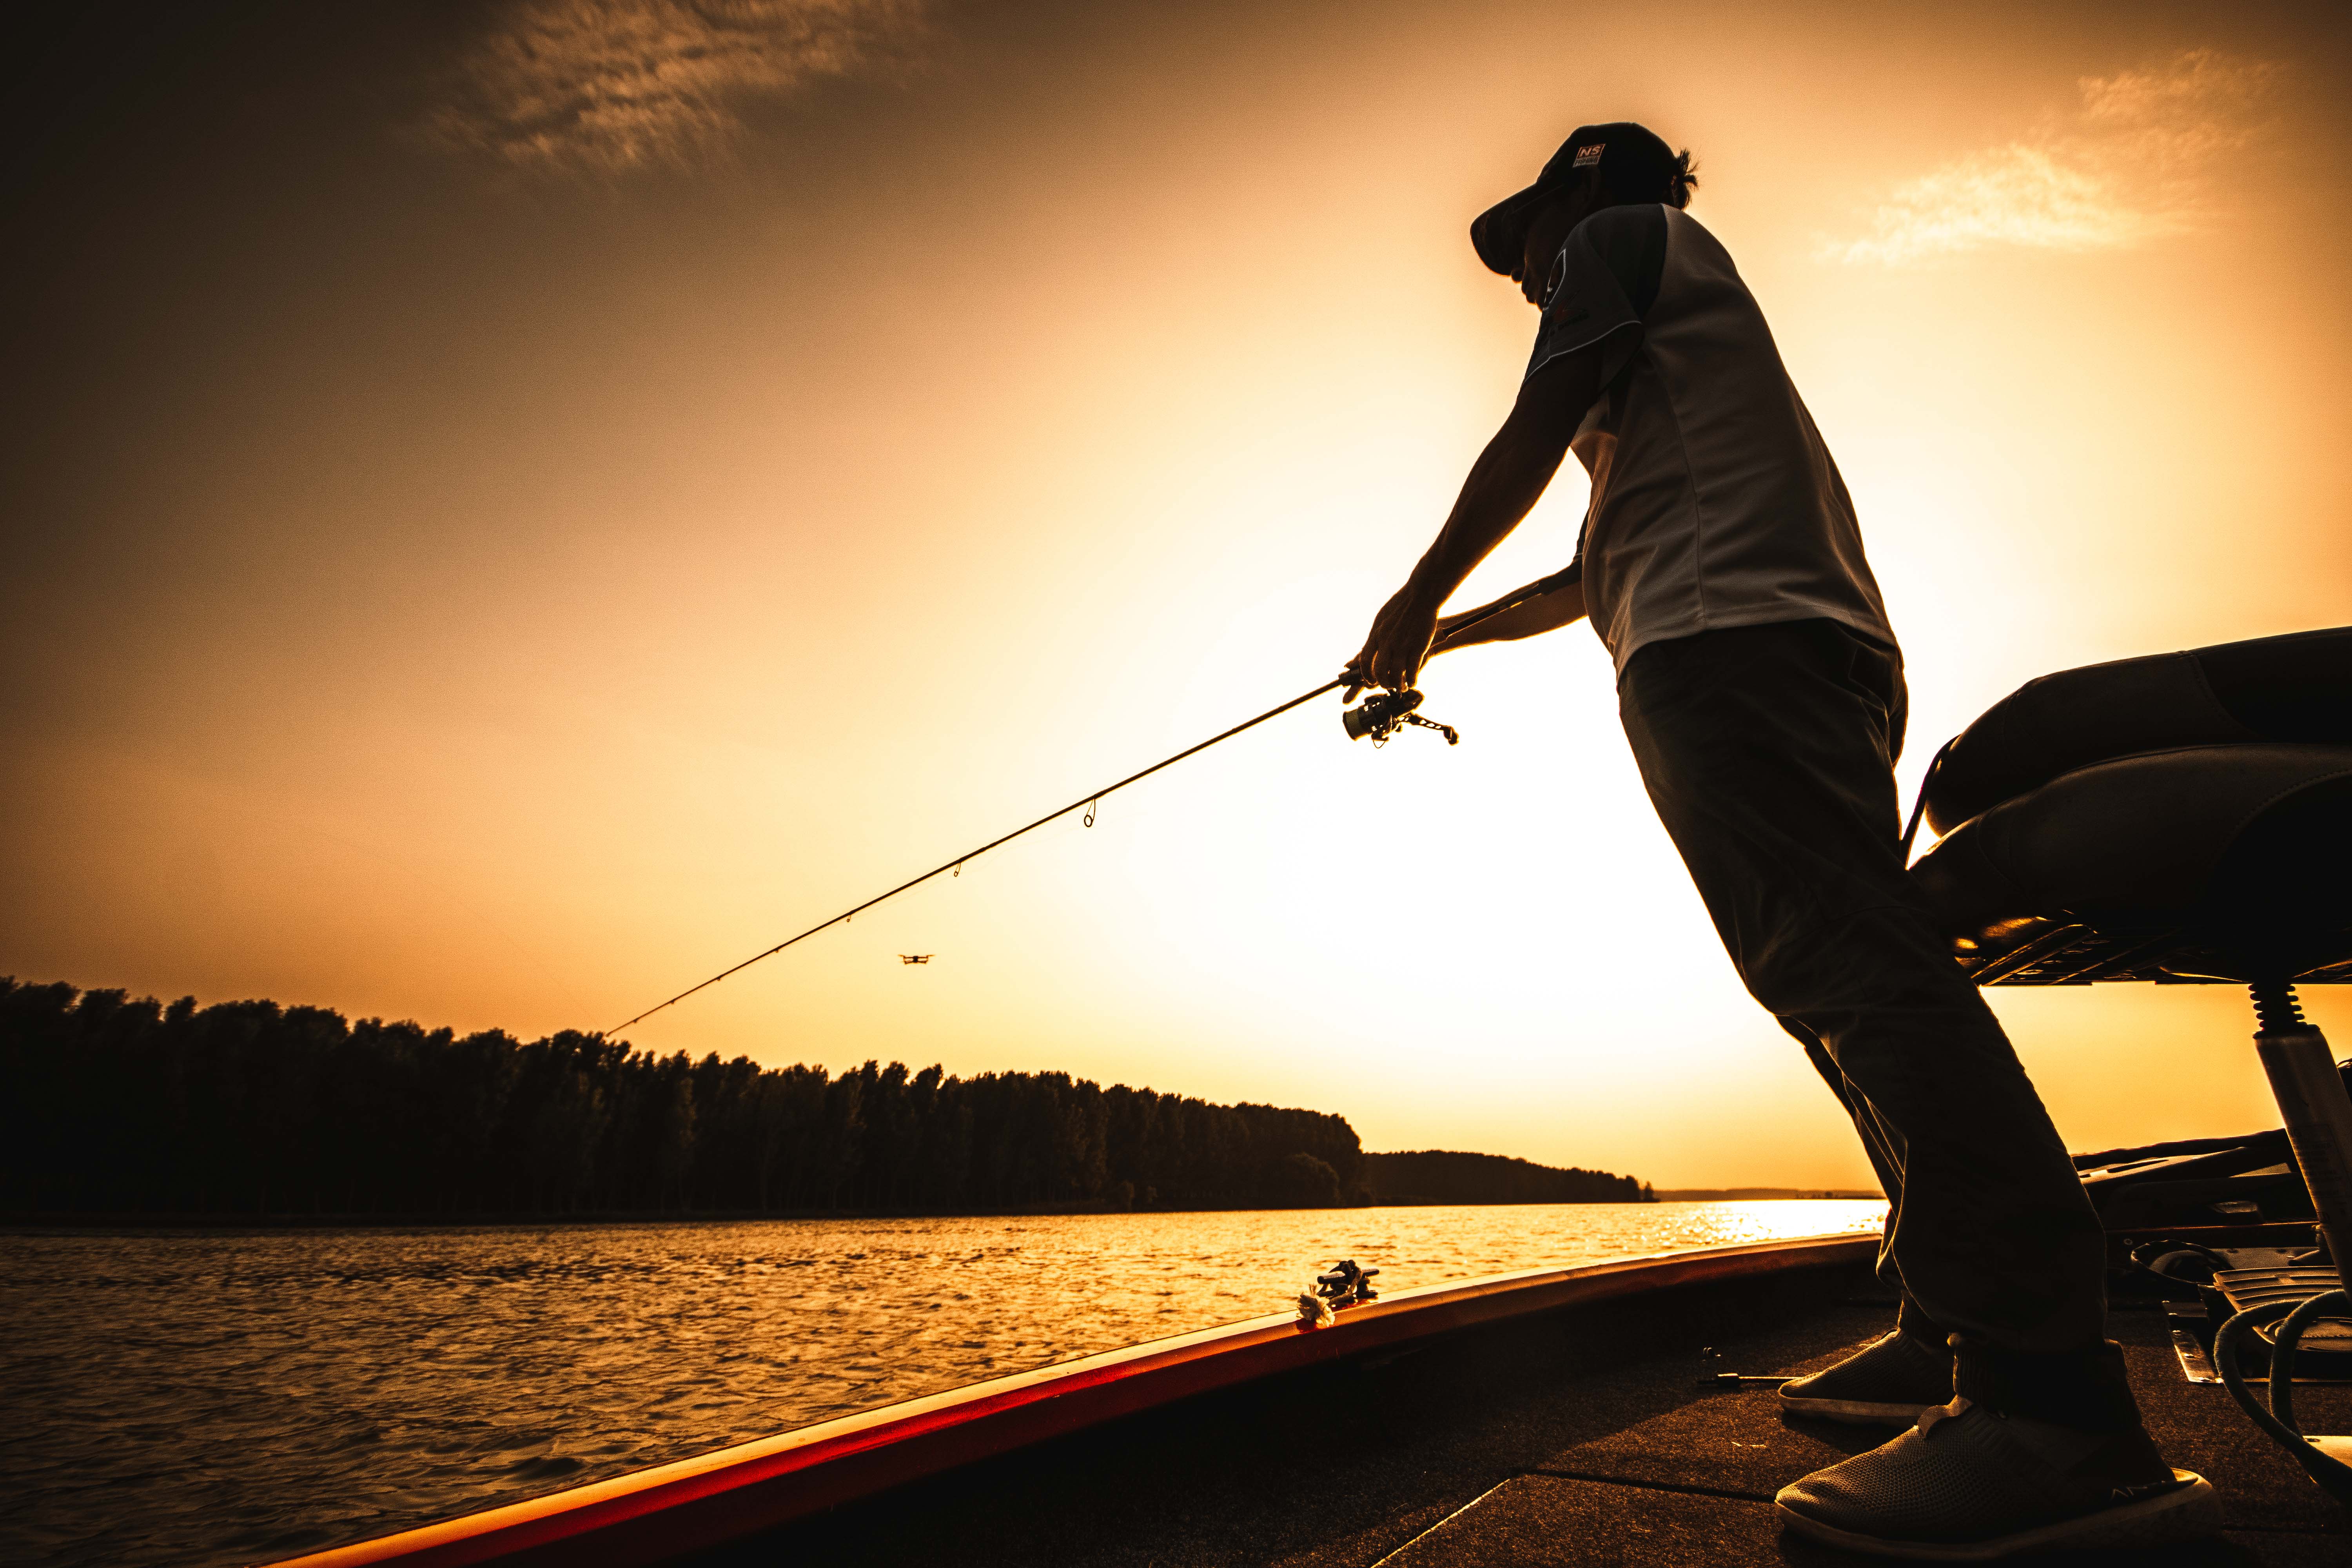 亚洲最大路亚钓鱼赛事 2021长城炮路亚国际锦标赛开赛